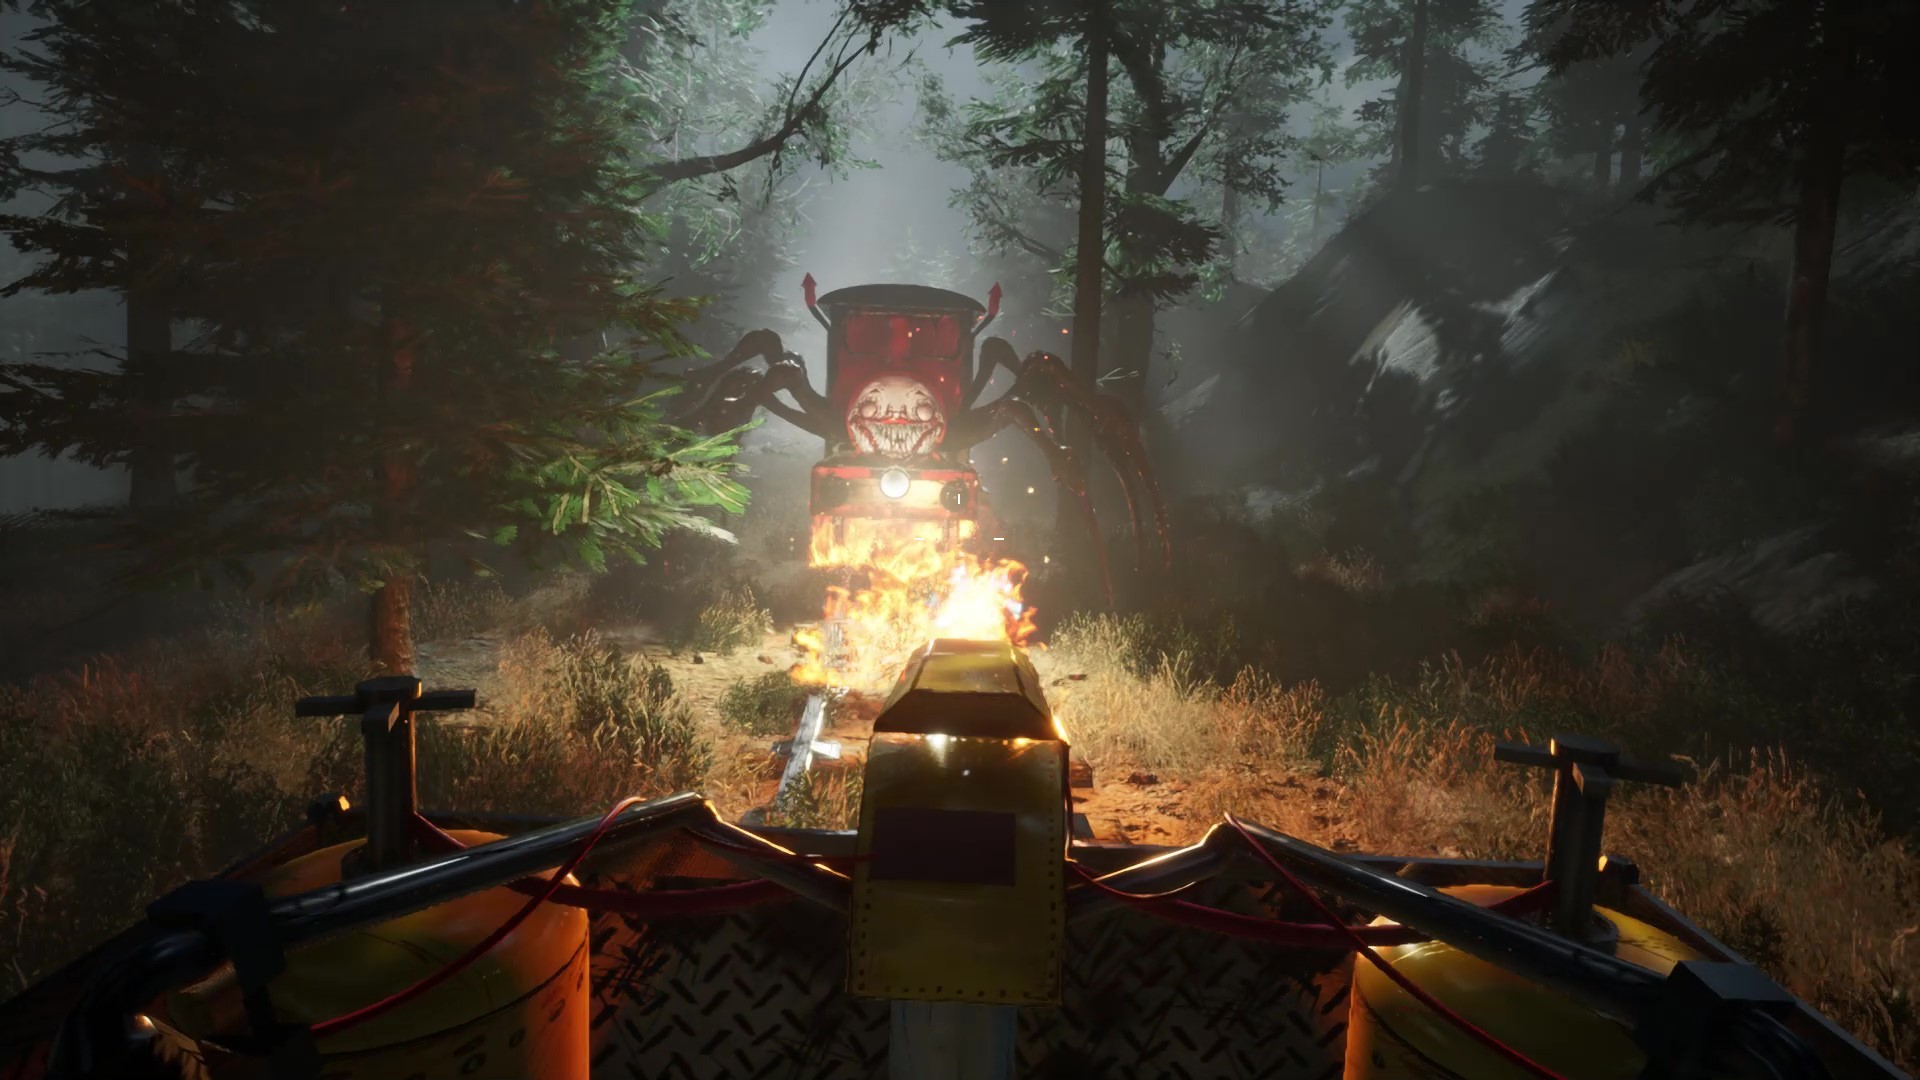 生存恐怖游戏《查尔斯小火车》将于12月9日发售